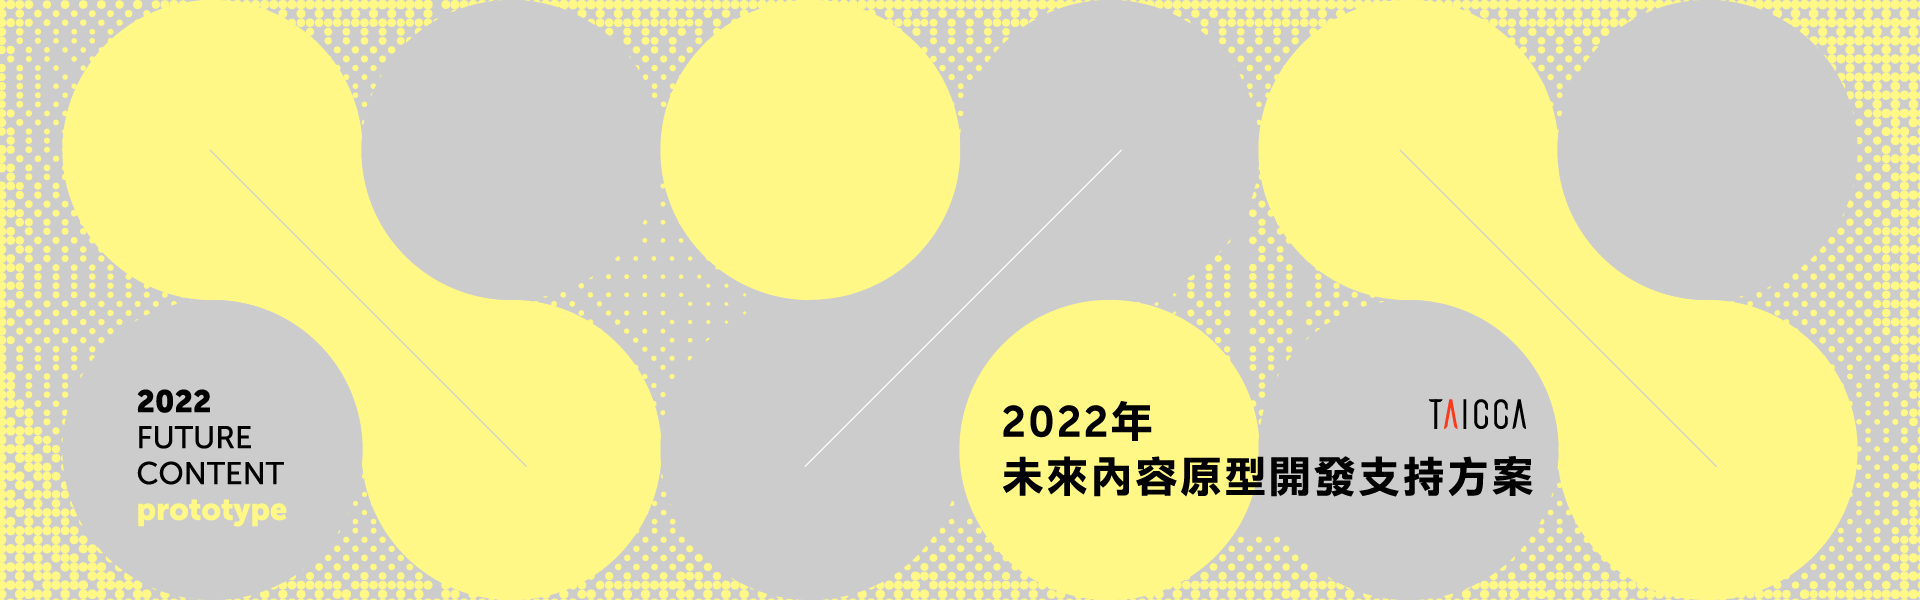 2022 年未來內容原型開發支持方案